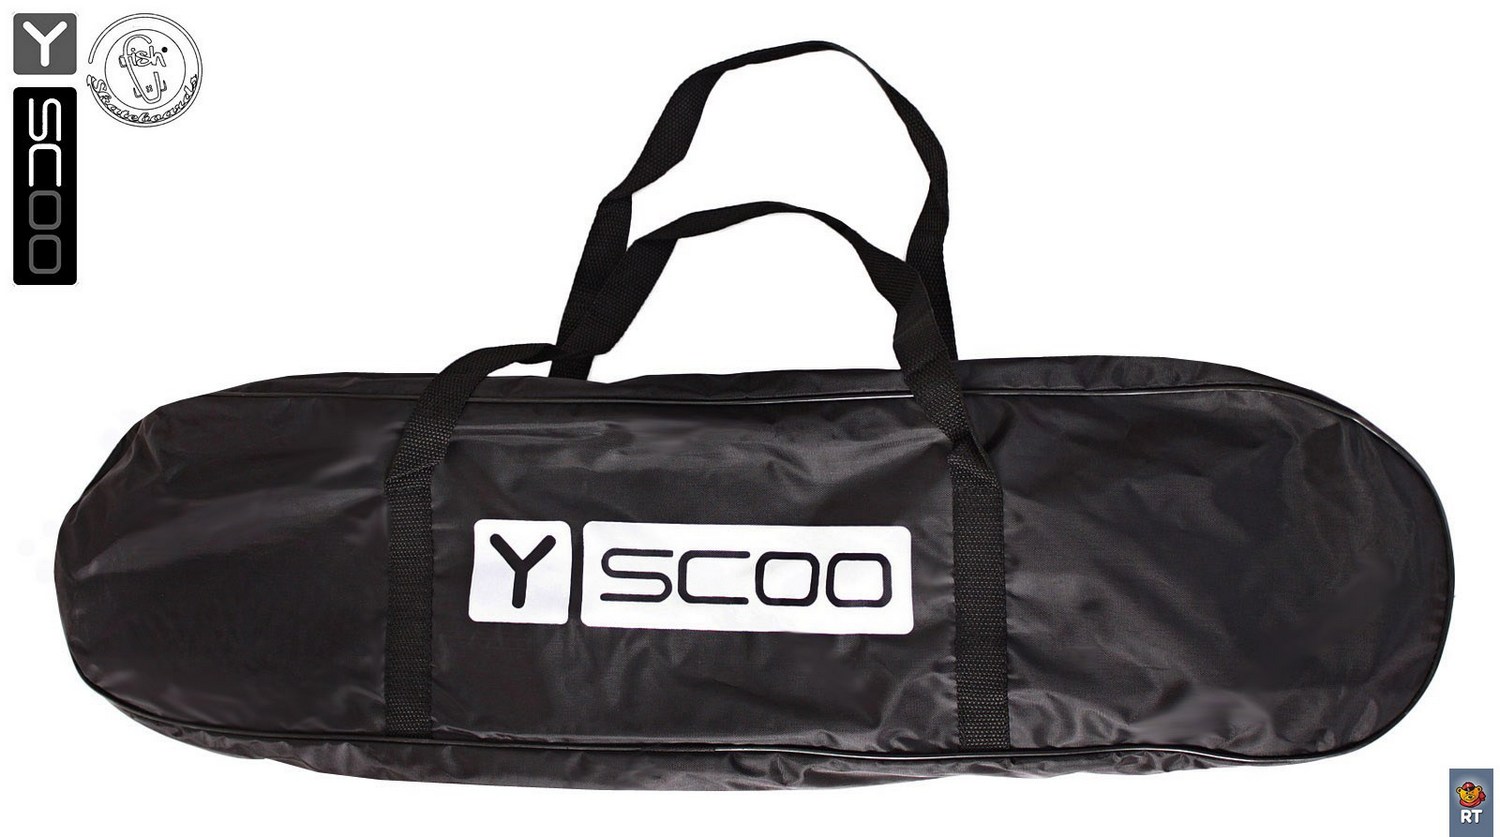 Скейтборд виниловый Y-Scoo Big Fishskateboard 27" 402-B4 с сумкой, черный с разноцветными колесами  